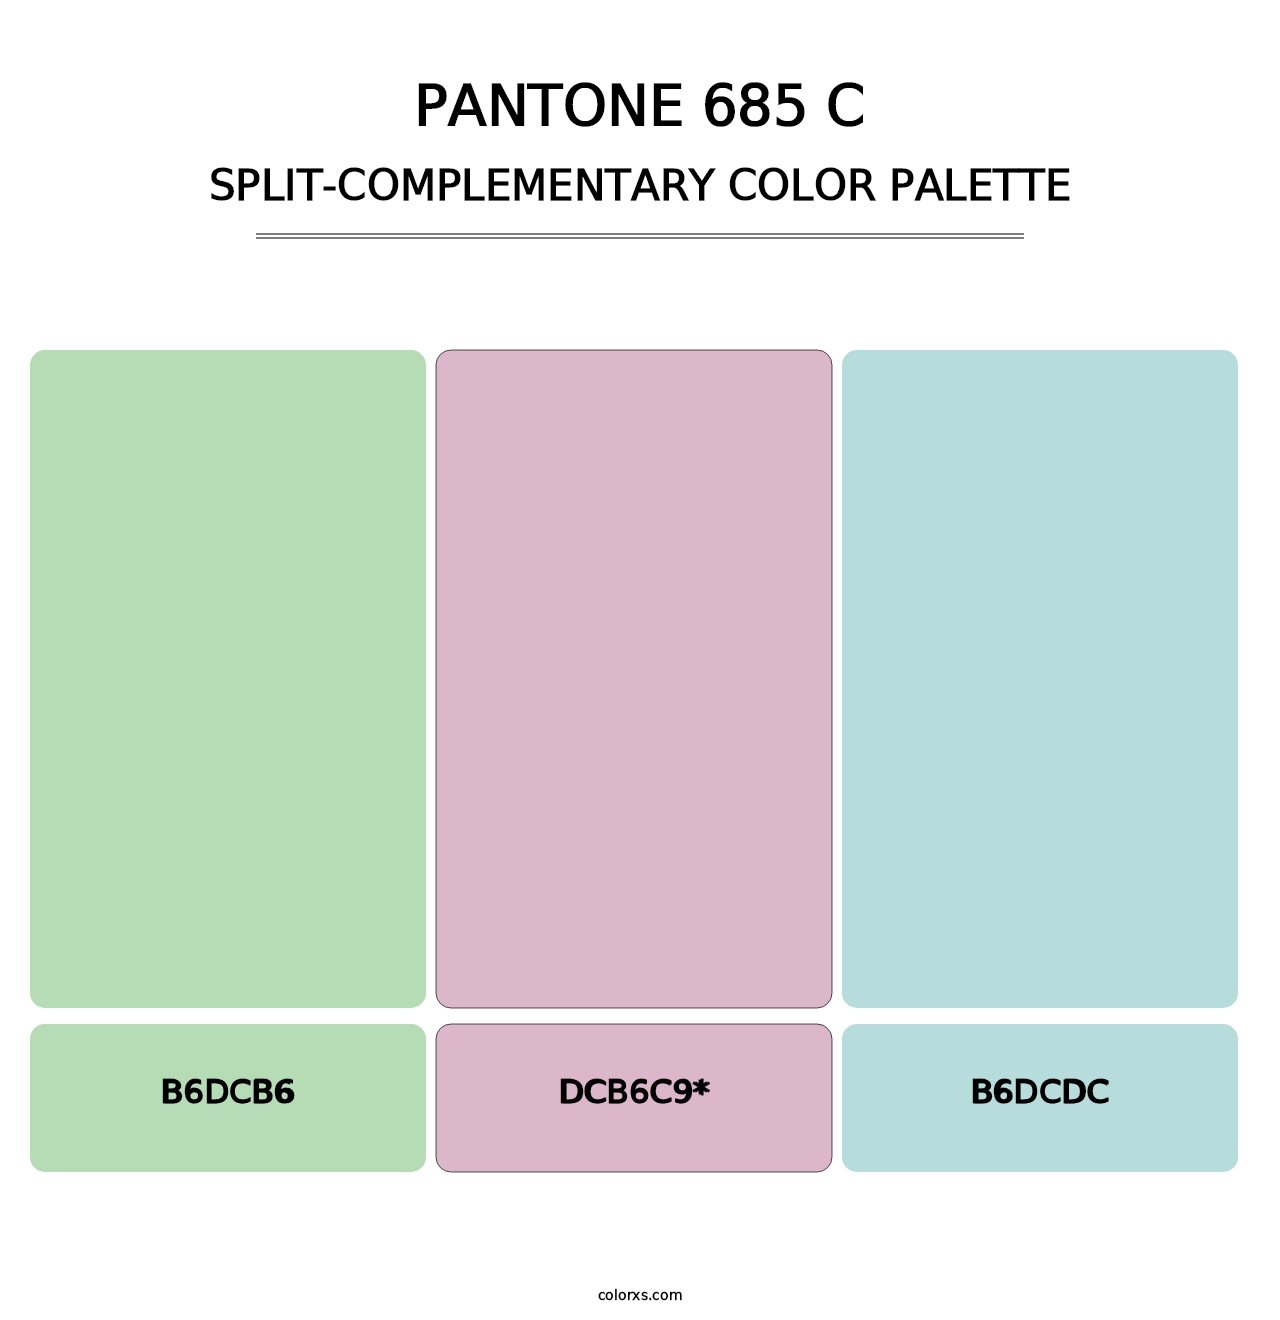 PANTONE 685 C - Split-Complementary Color Palette